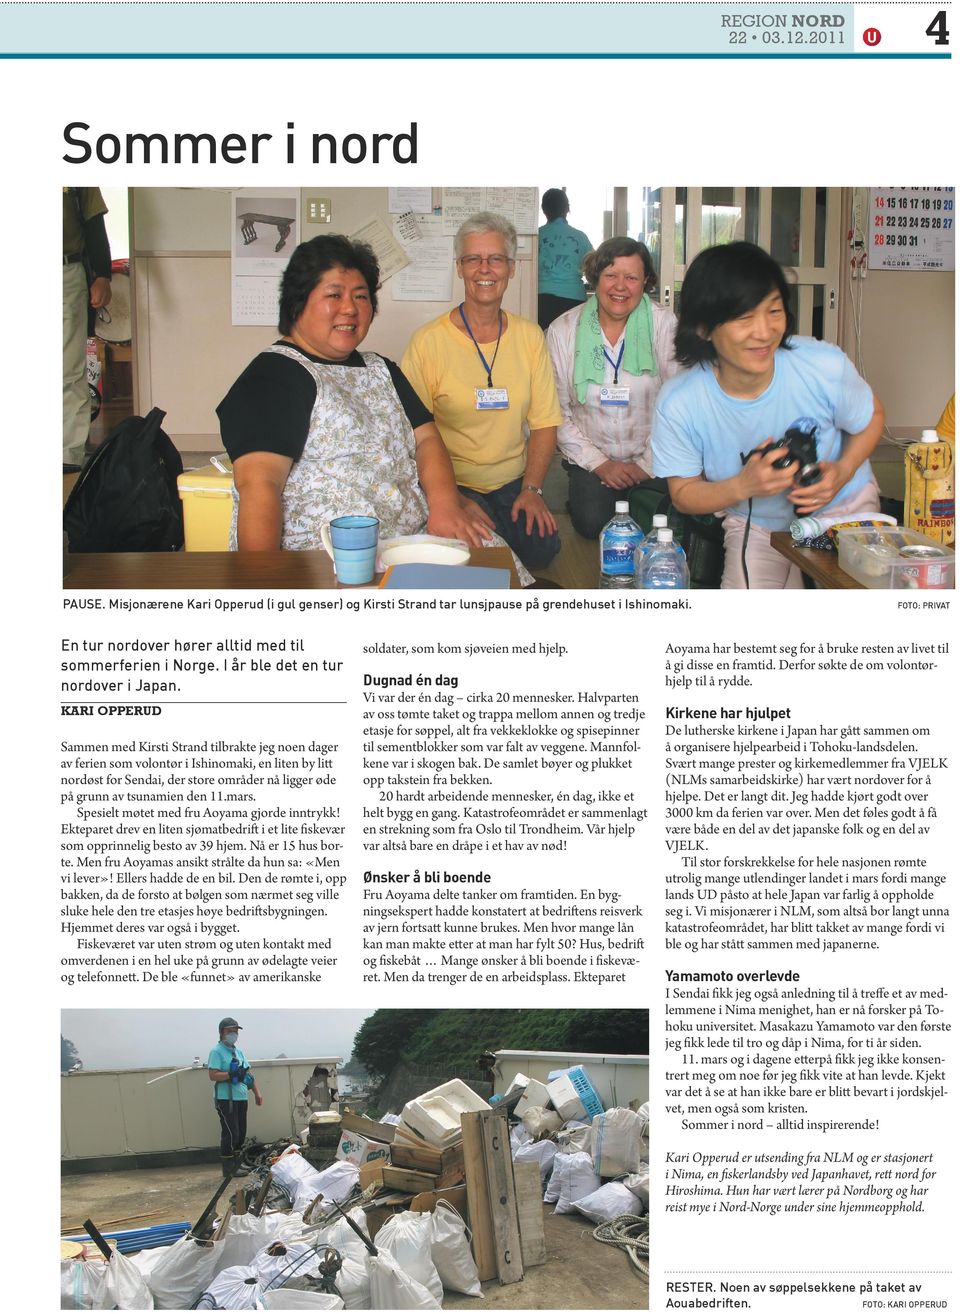 KARI OPPERUD Sammen med Kirsti Strand tilbrakte jeg noen dager av ferien som volontør i Ishinomaki, en liten by litt nordøst for Sendai, der store områder nå ligger øde på grunn av tsunamien den 11.